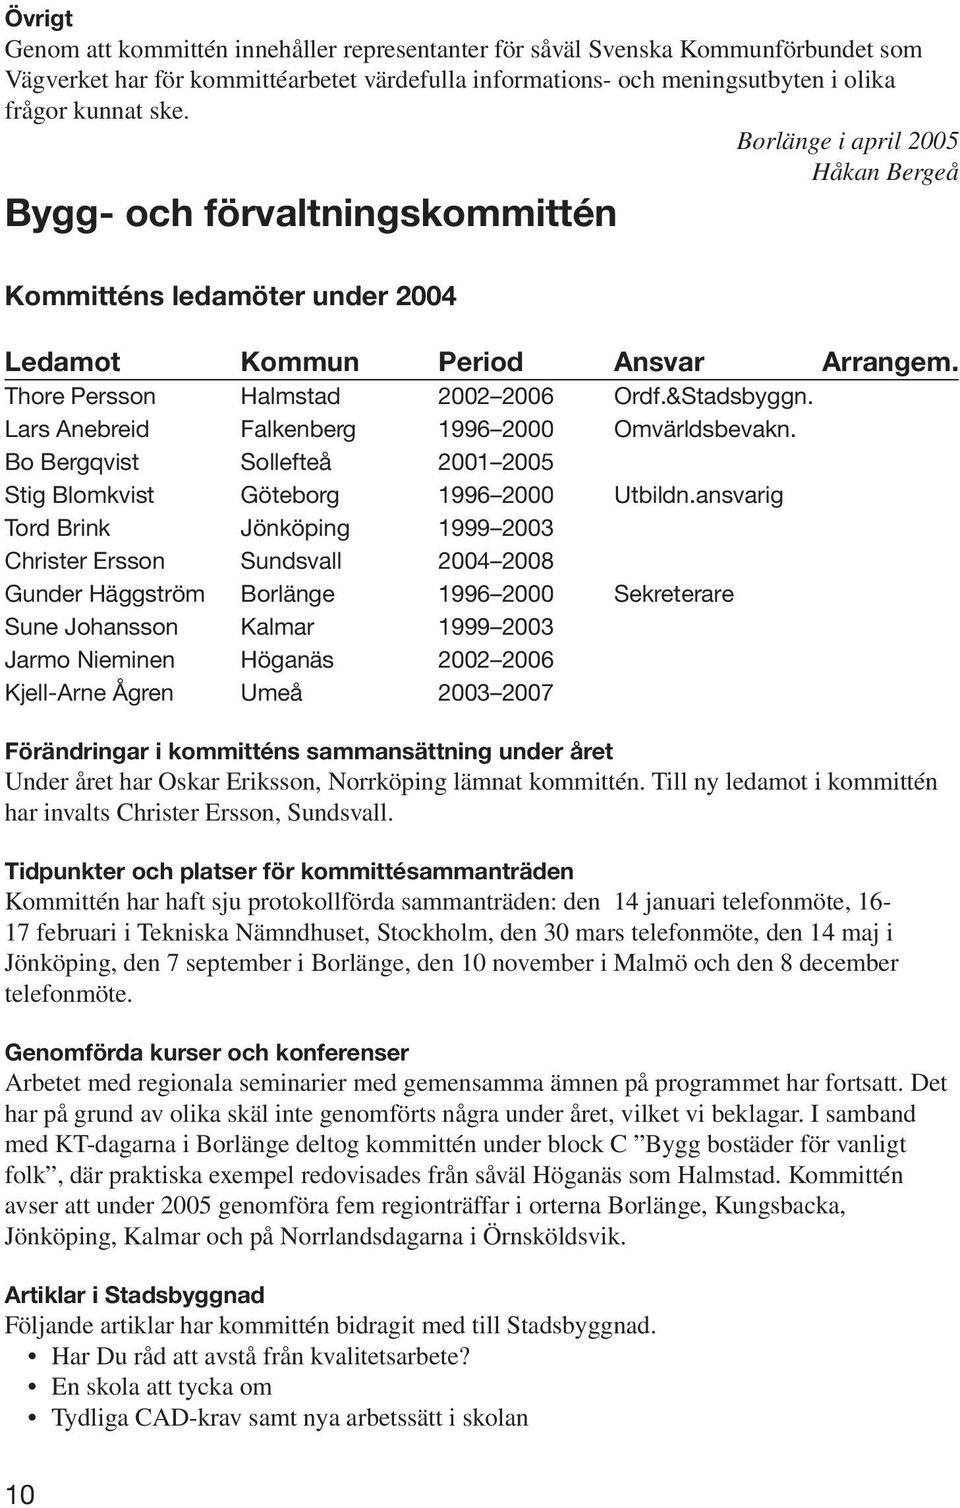 Lars Anebreid Falkenberg 1996 2000 Omvärldsbevakn. Bo Bergqvist Sollefteå 2001 2005 Stig Blomkvist Göteborg 1996 2000 Utbildn.